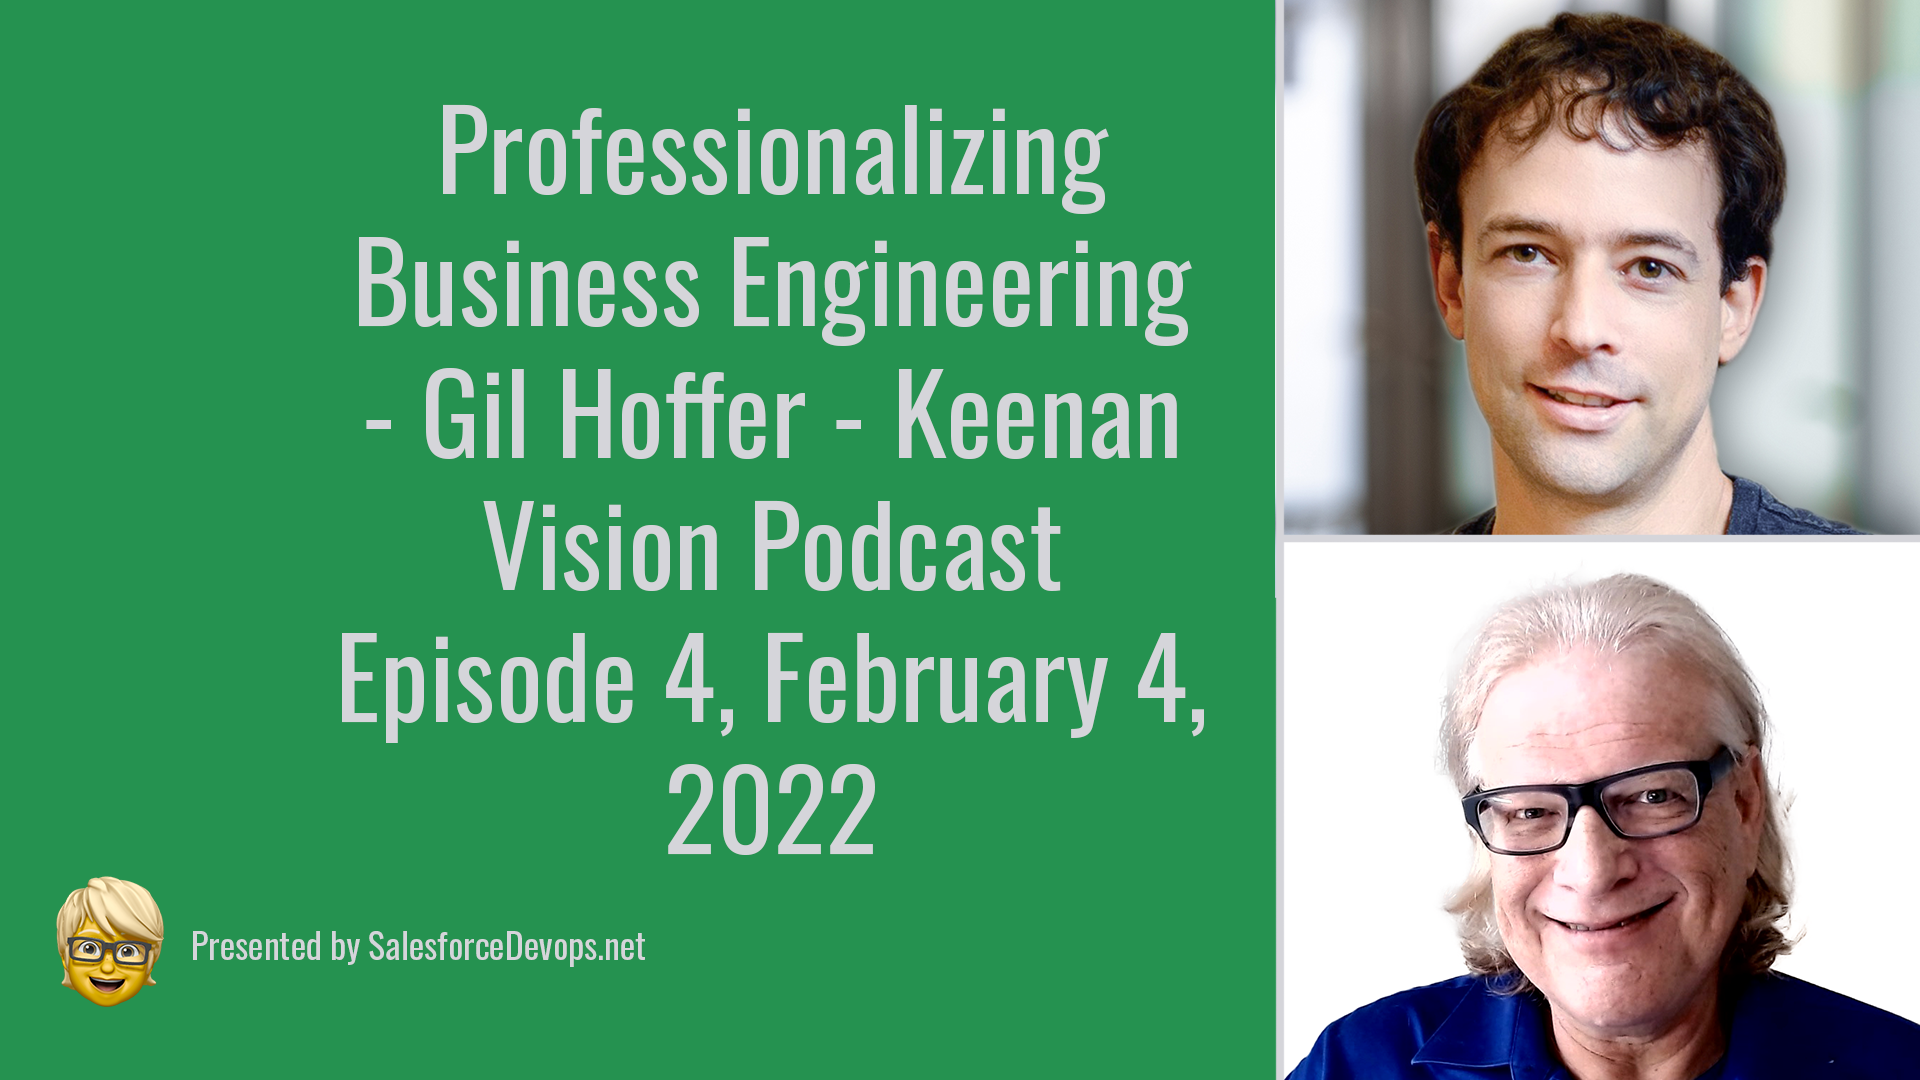 Keenan Vision Podcast - Gil Hoffer - Salto